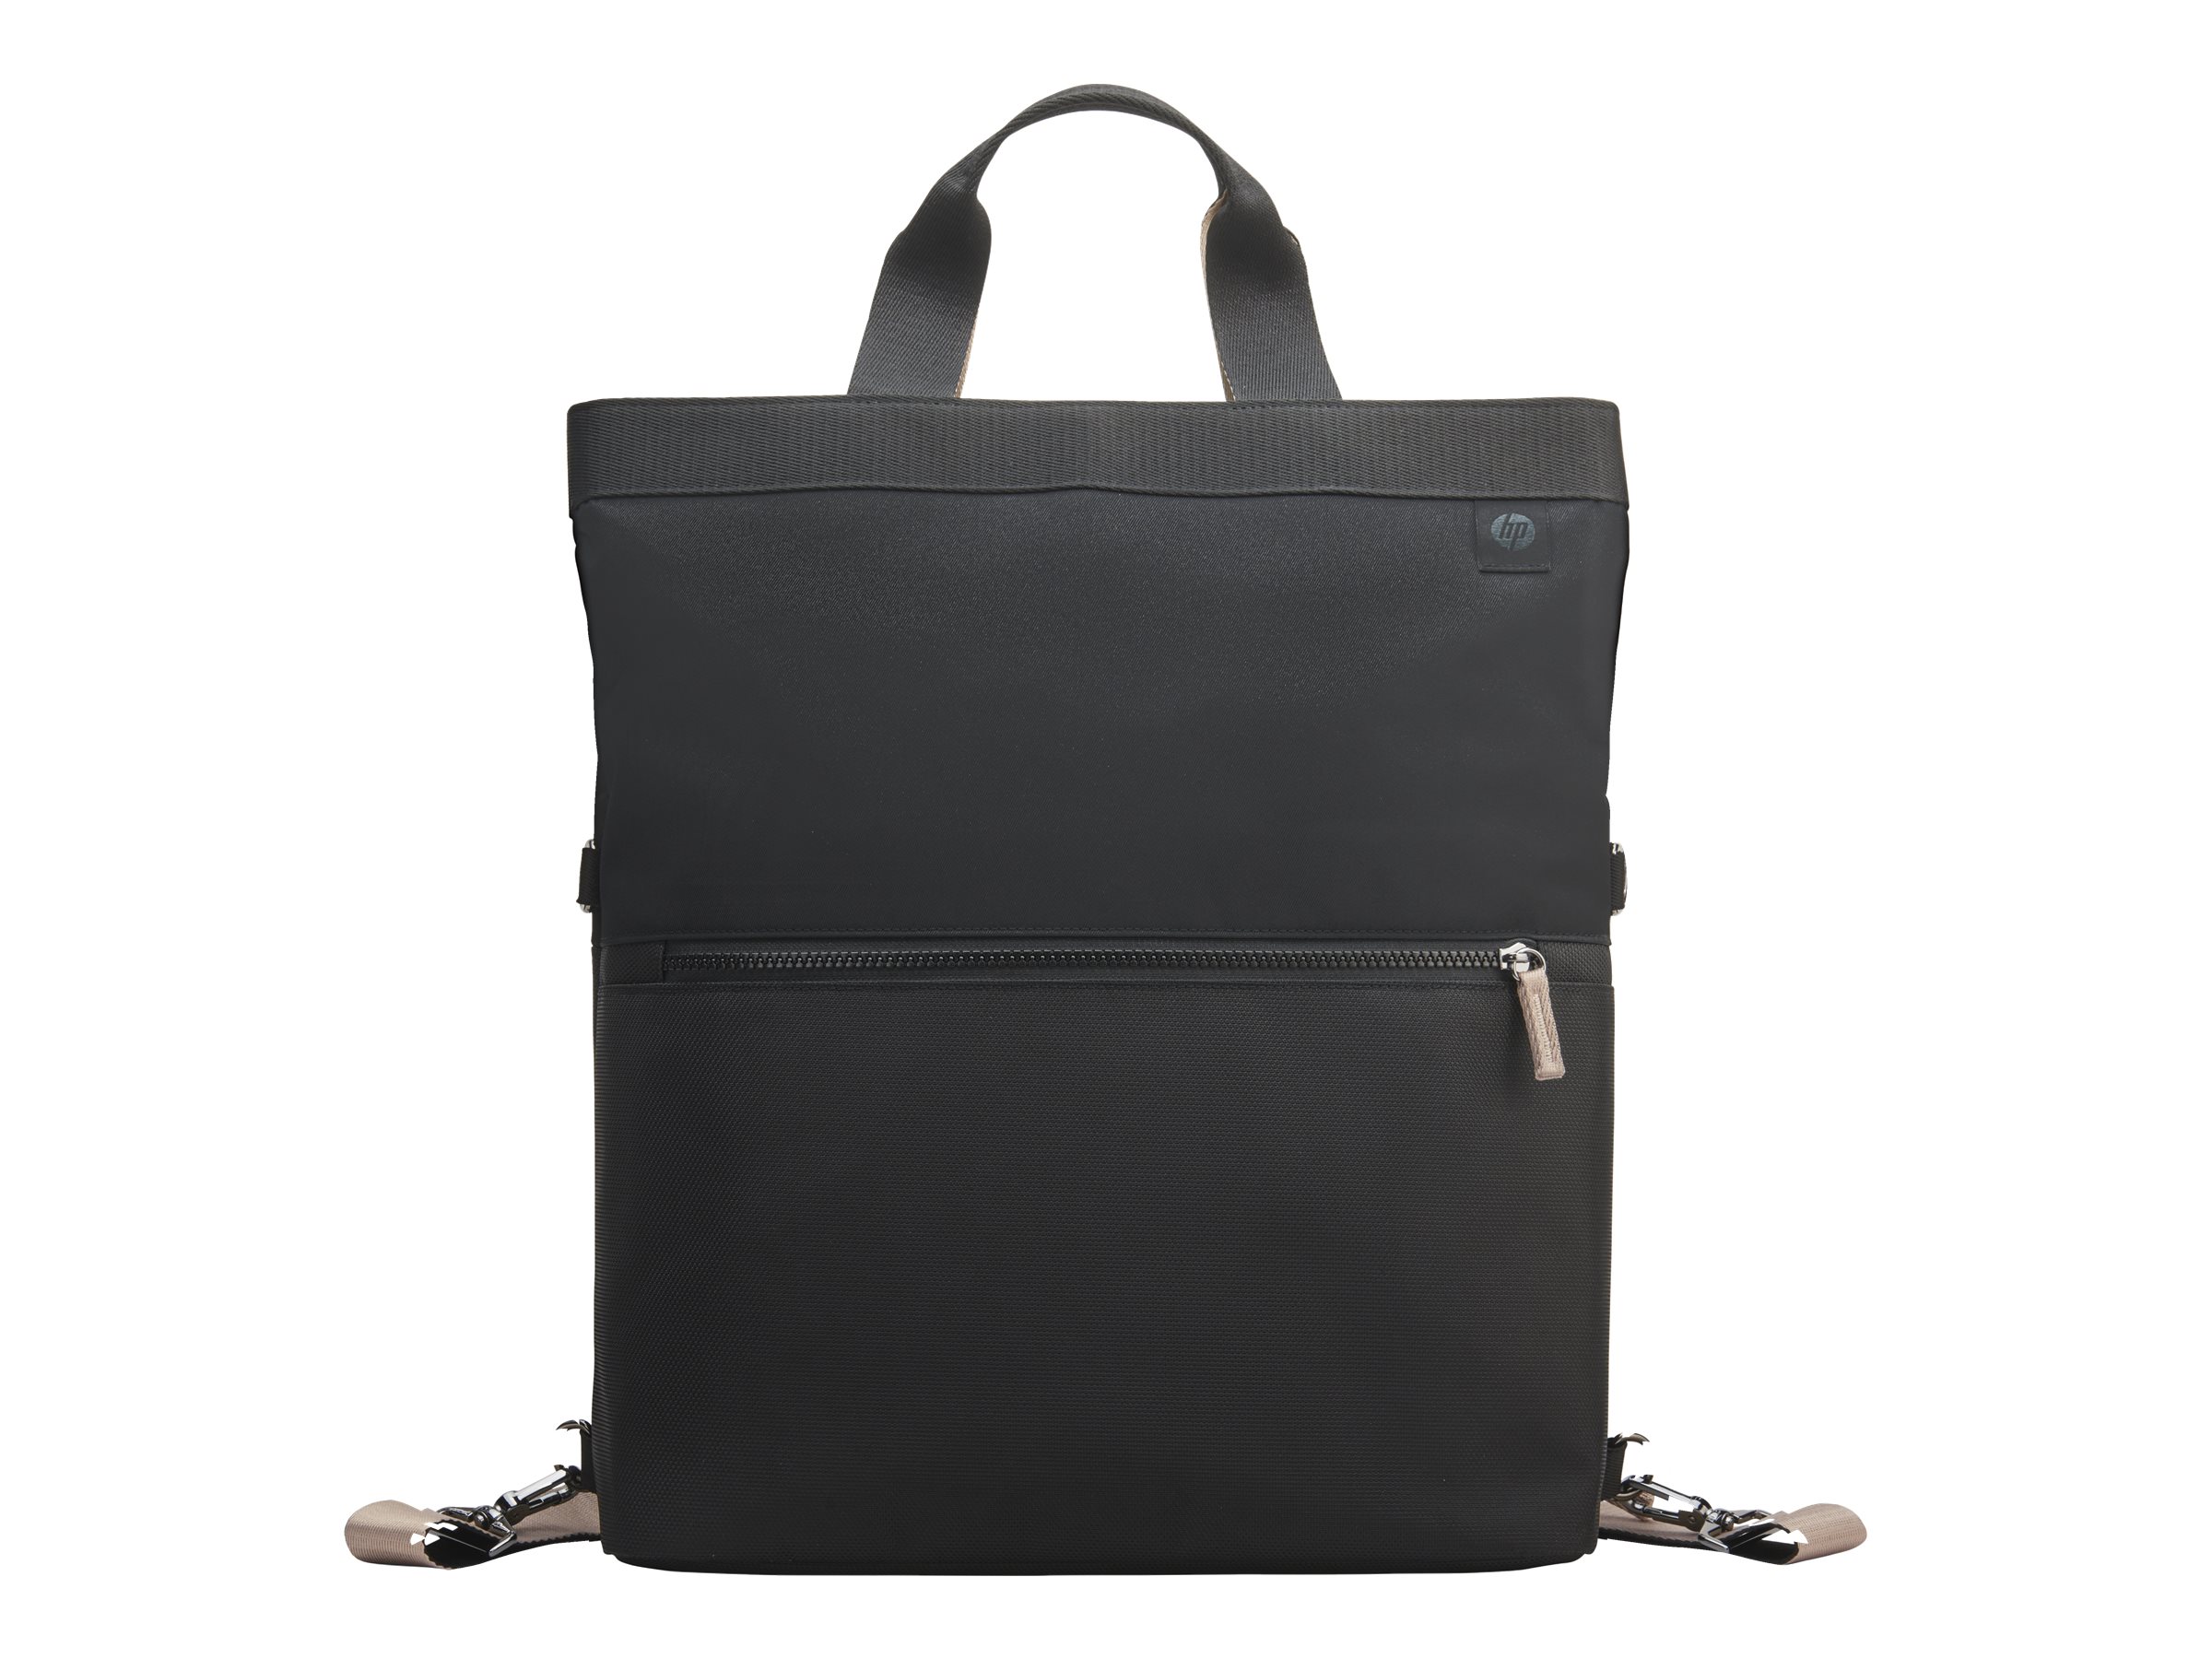 HP Laptop Backpack Tote - Notebook-Tragetasche und Handtasche - wandelbar - 35.8 cm (14.1